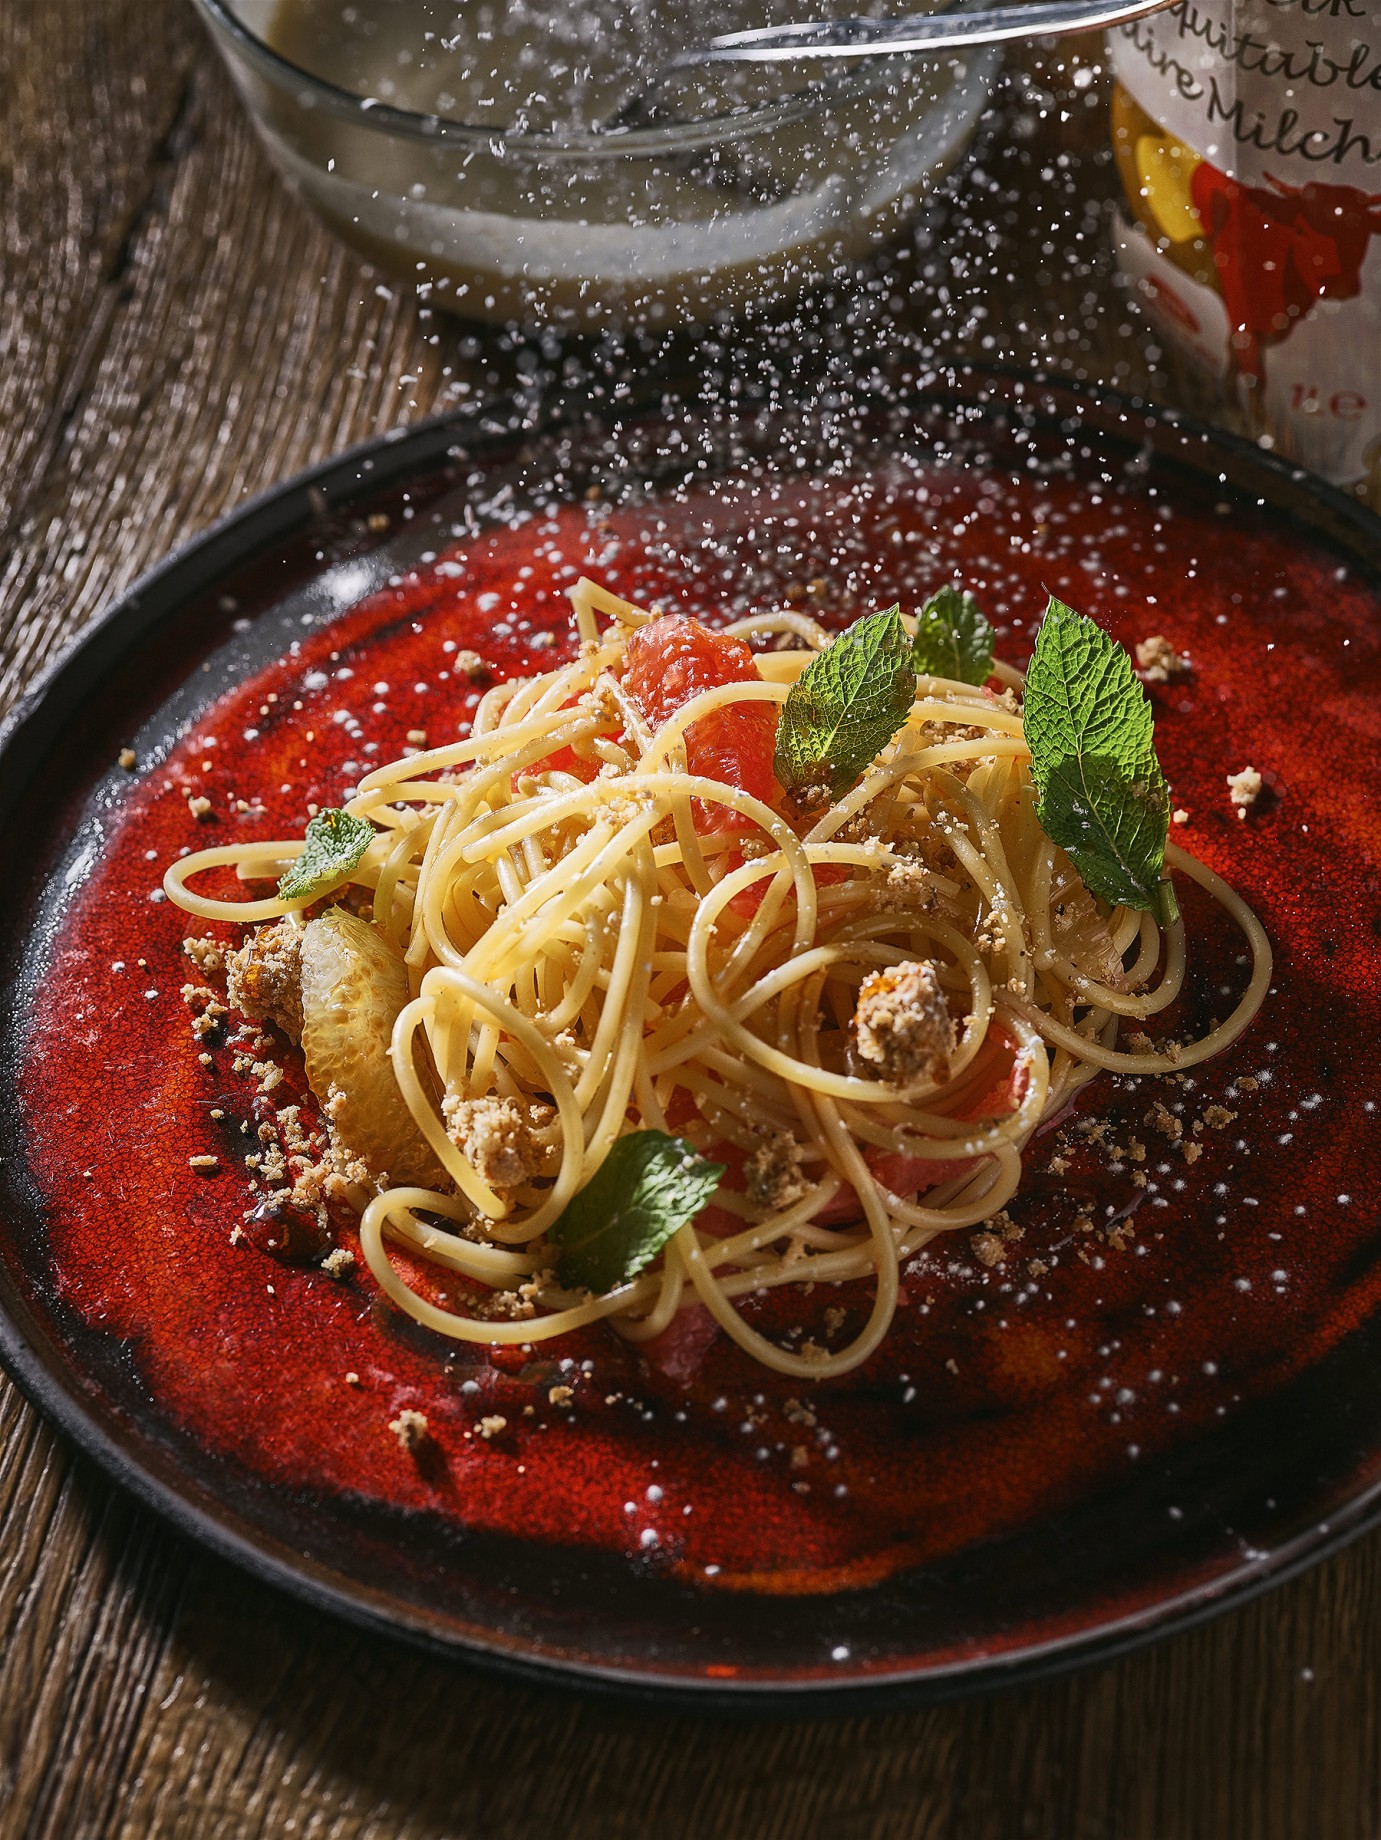 32_Lapraille-Pates_spaghettis-agrumes-creme-anglaise-base